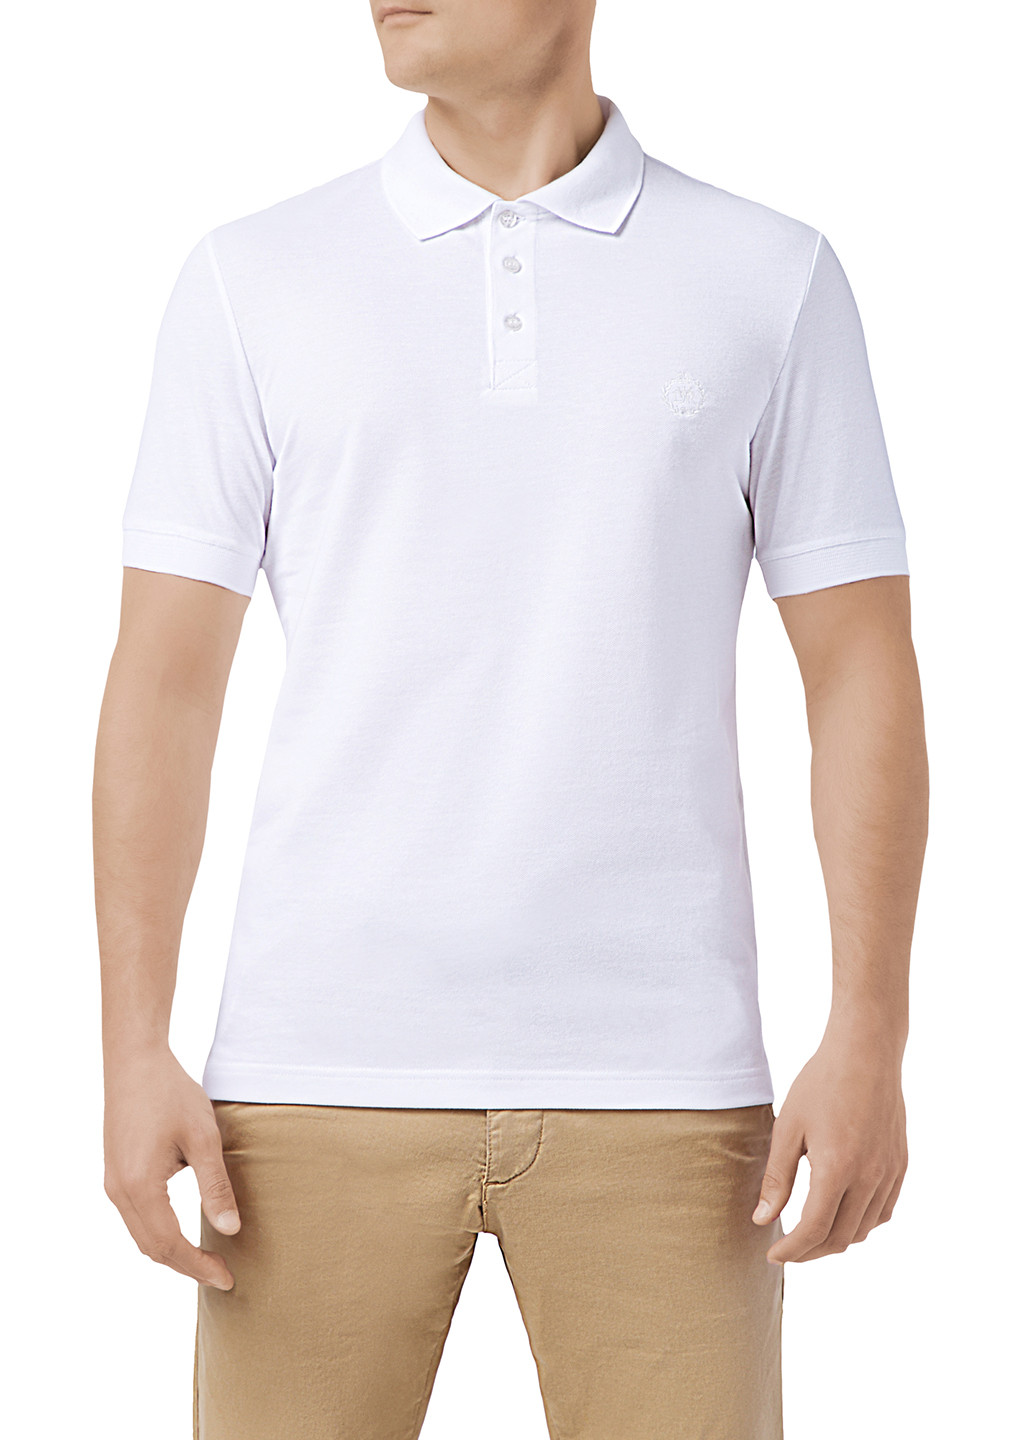 Белая футболка-поло для мужчин Diwari однотонная